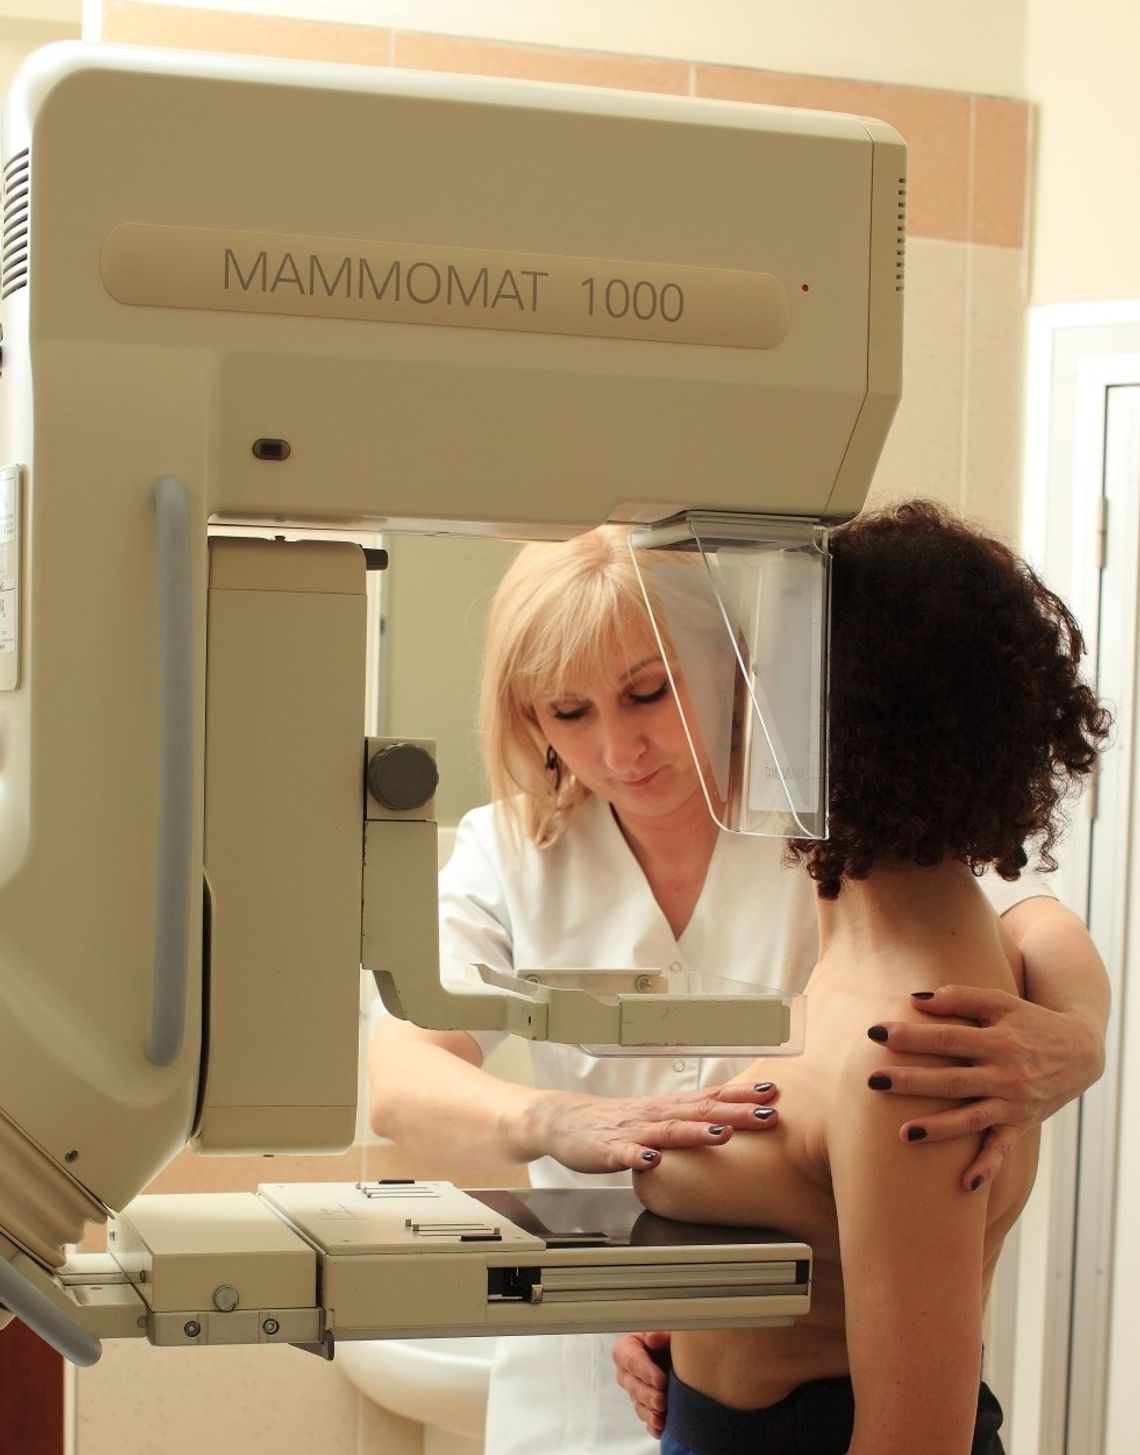 Bezpłatne badania mammograficzne 